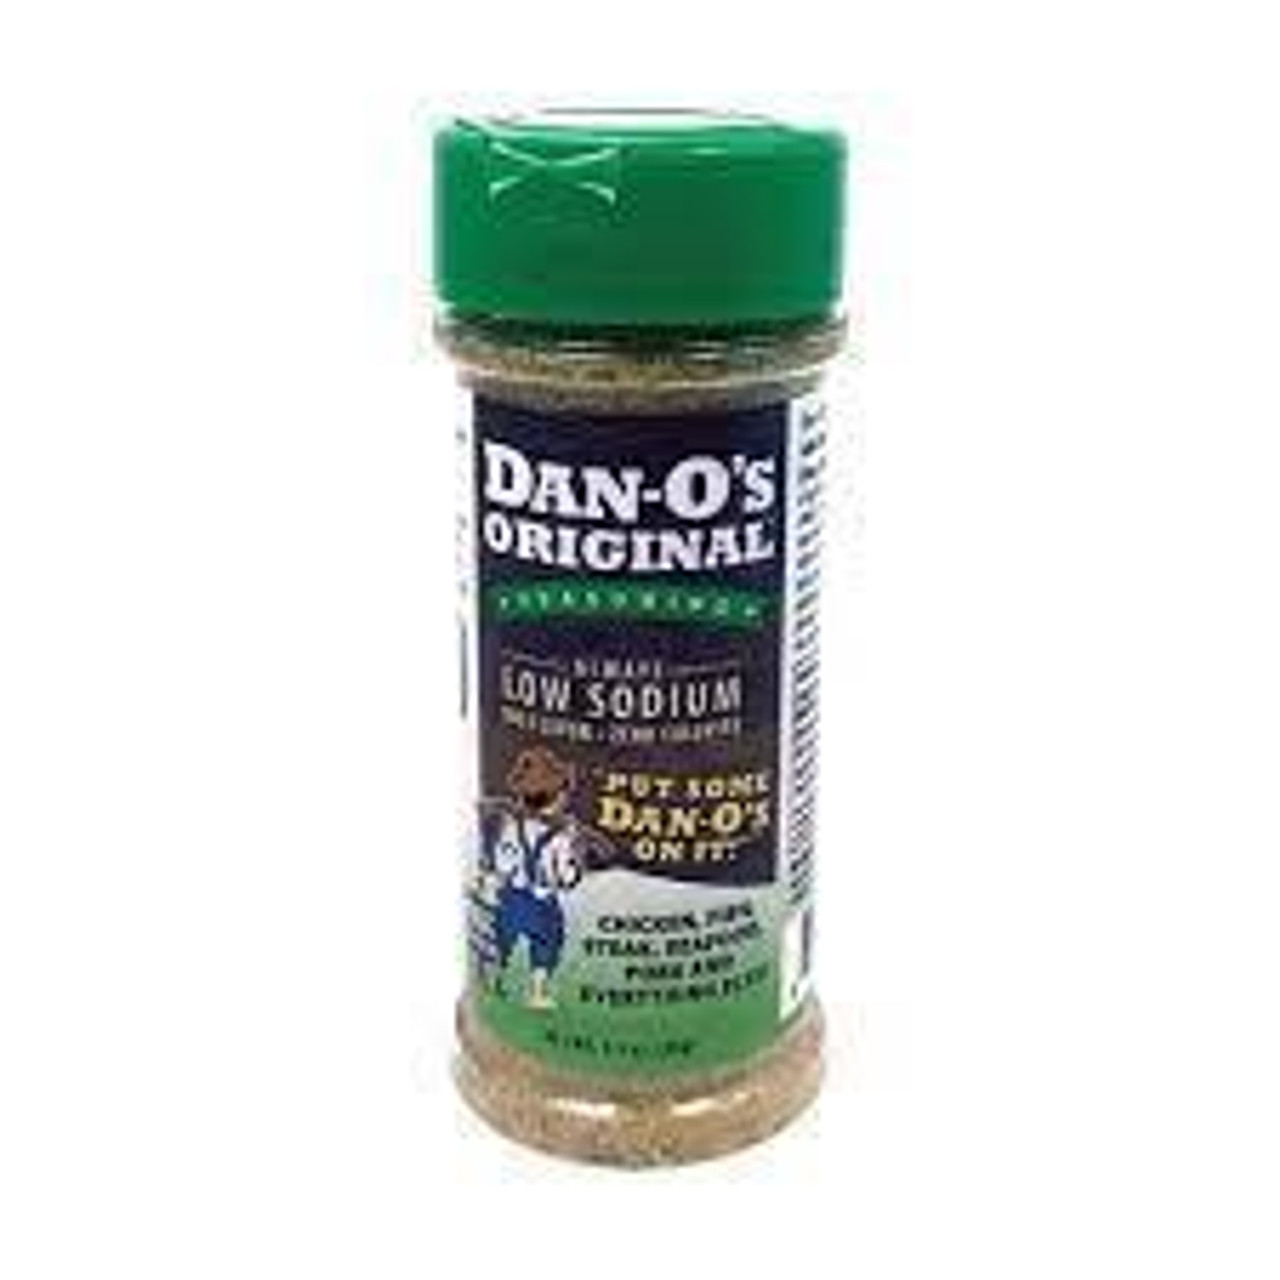 Dan-O's Cheesoning Seasoning - 2.6 oz.